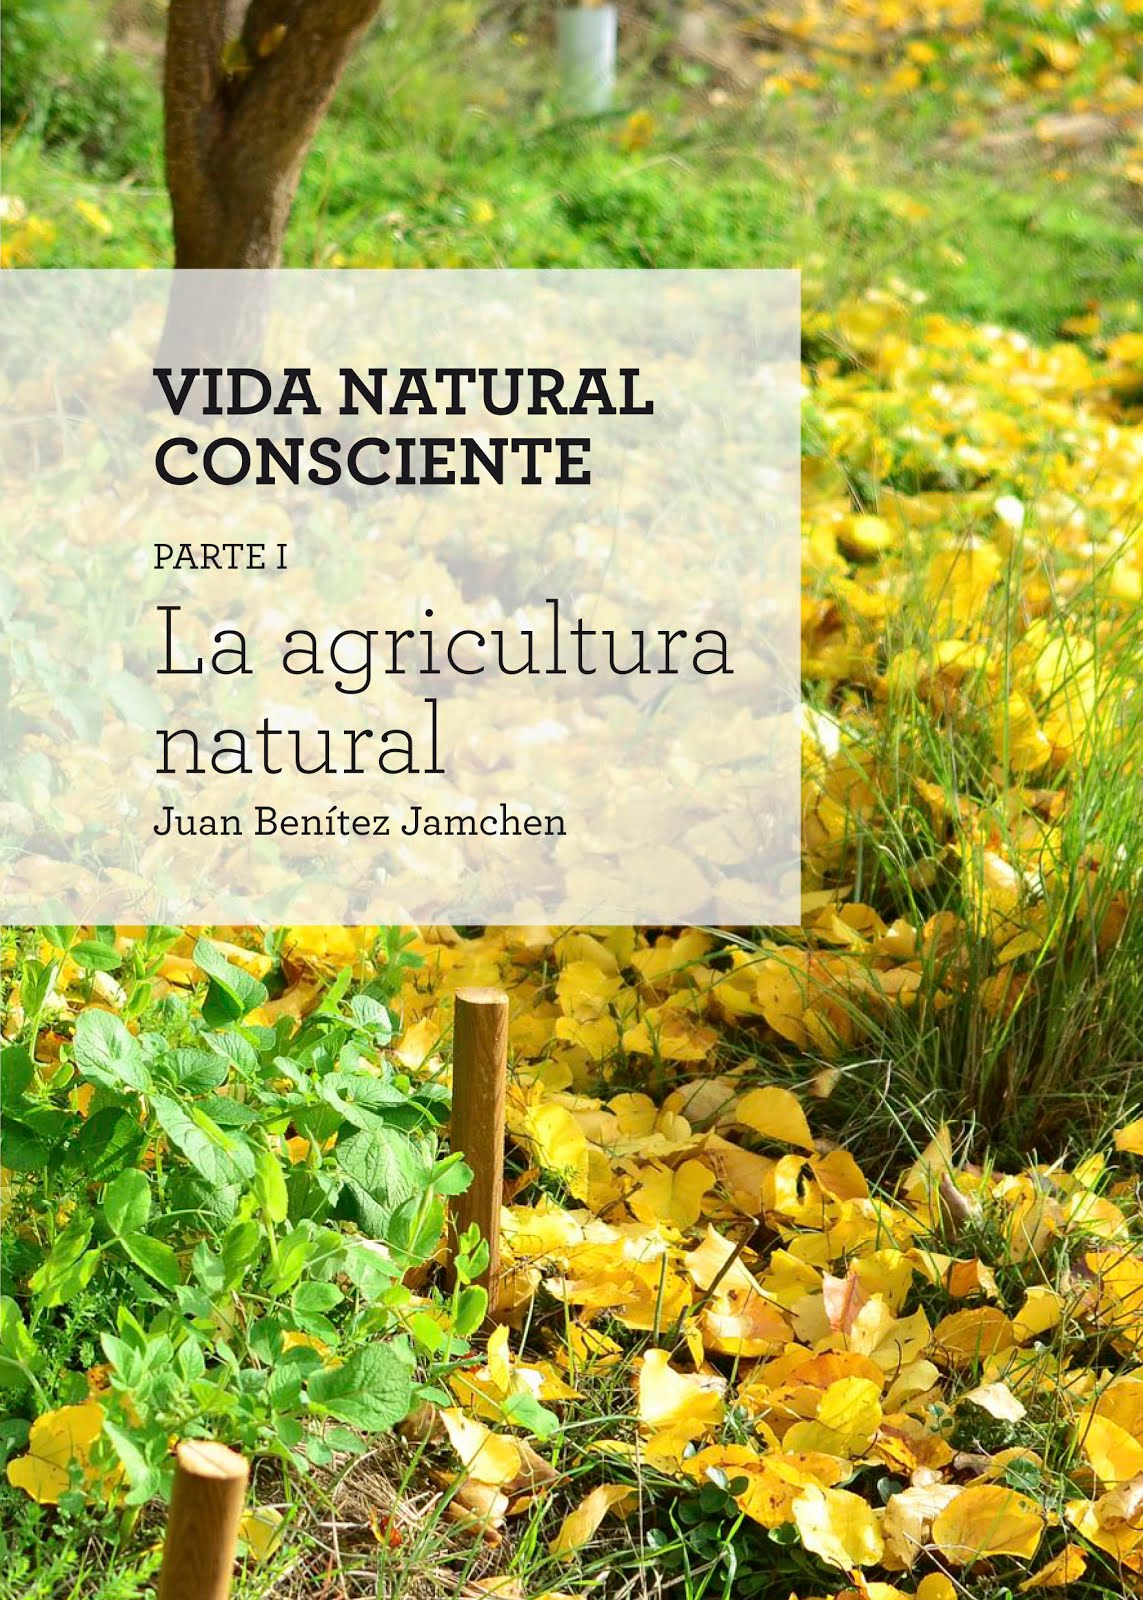 Vida Natural Consciente. Parte I: La agricultura natural